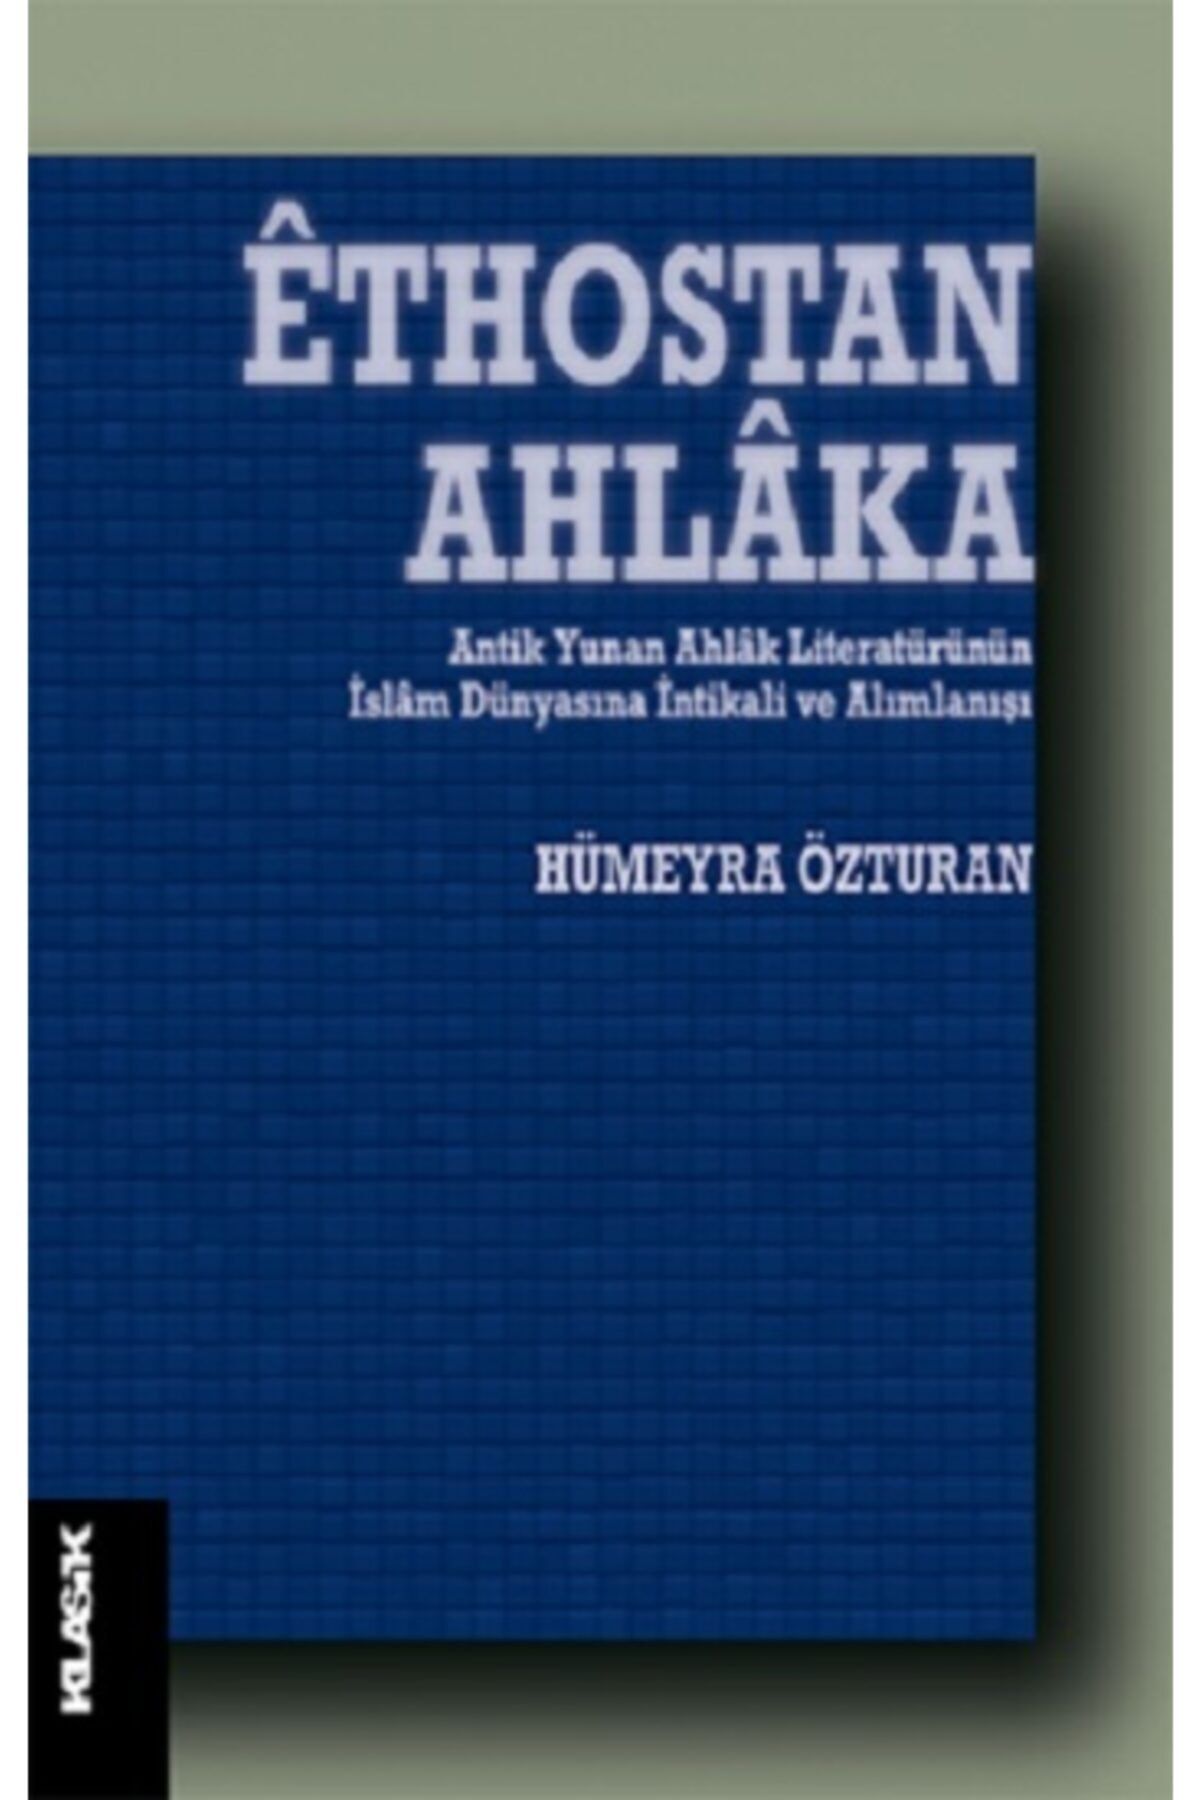 Klasik Yayınları Ethostan Ahlaka - Antik Yunan Ahlak Literatürünün Islam Dünyasına Intikali Ve Alımlanışı